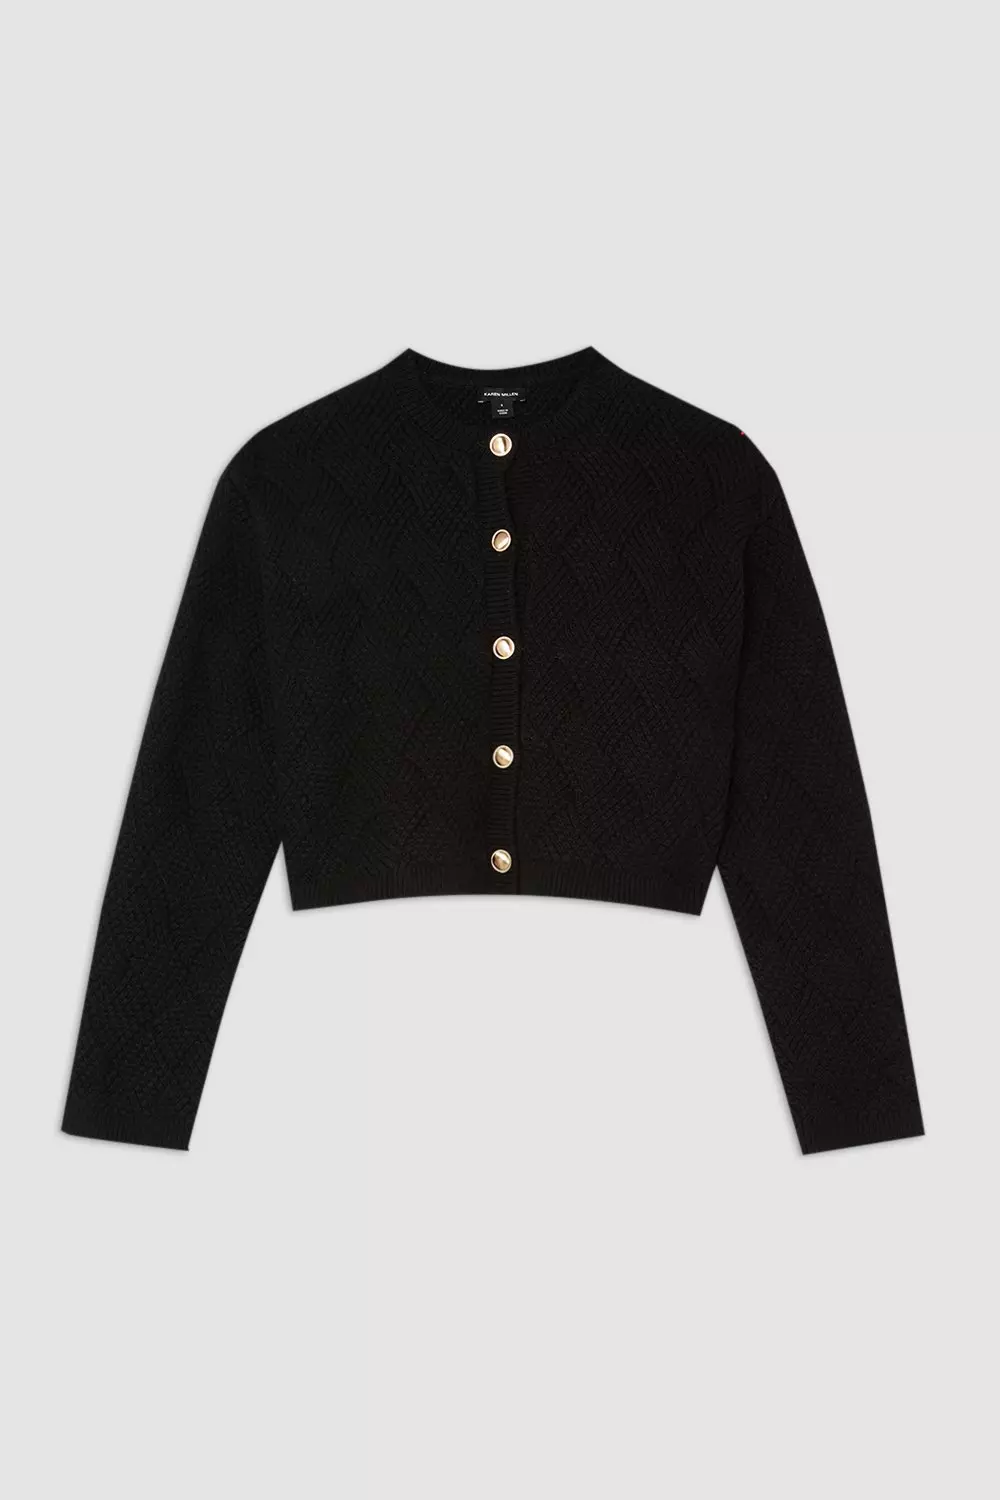 Wool Blend Button Chunky Textured Knit Cardigan | Karen Millen